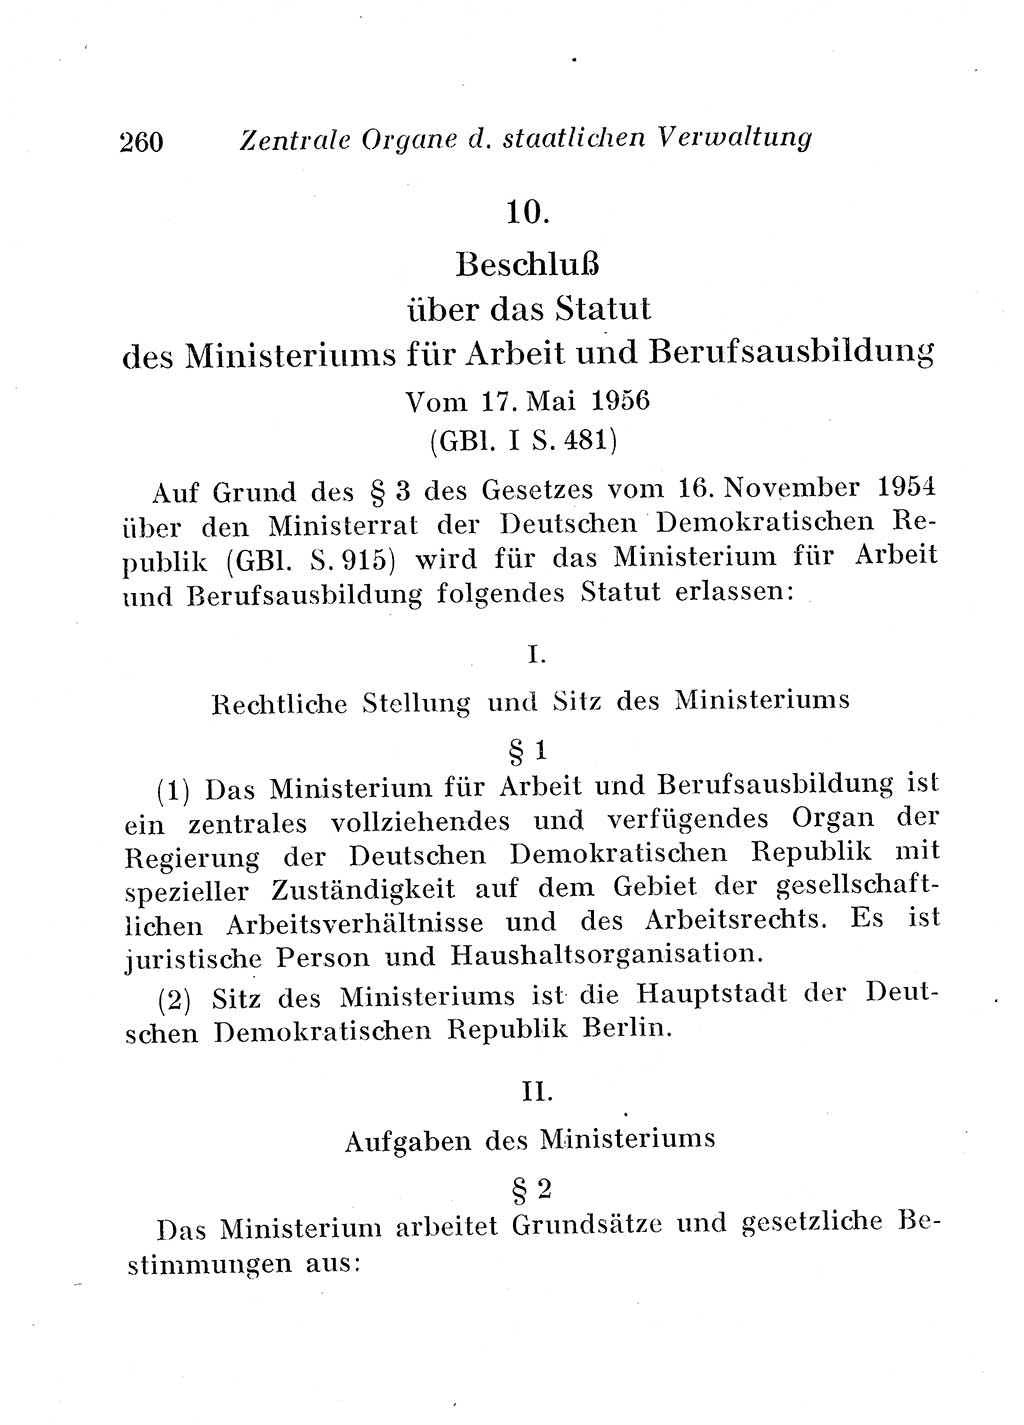 Staats- und verwaltungsrechtliche Gesetze der Deutschen Demokratischen Republik (DDR) 1958, Seite 260 (StVerwR Ges. DDR 1958, S. 260)